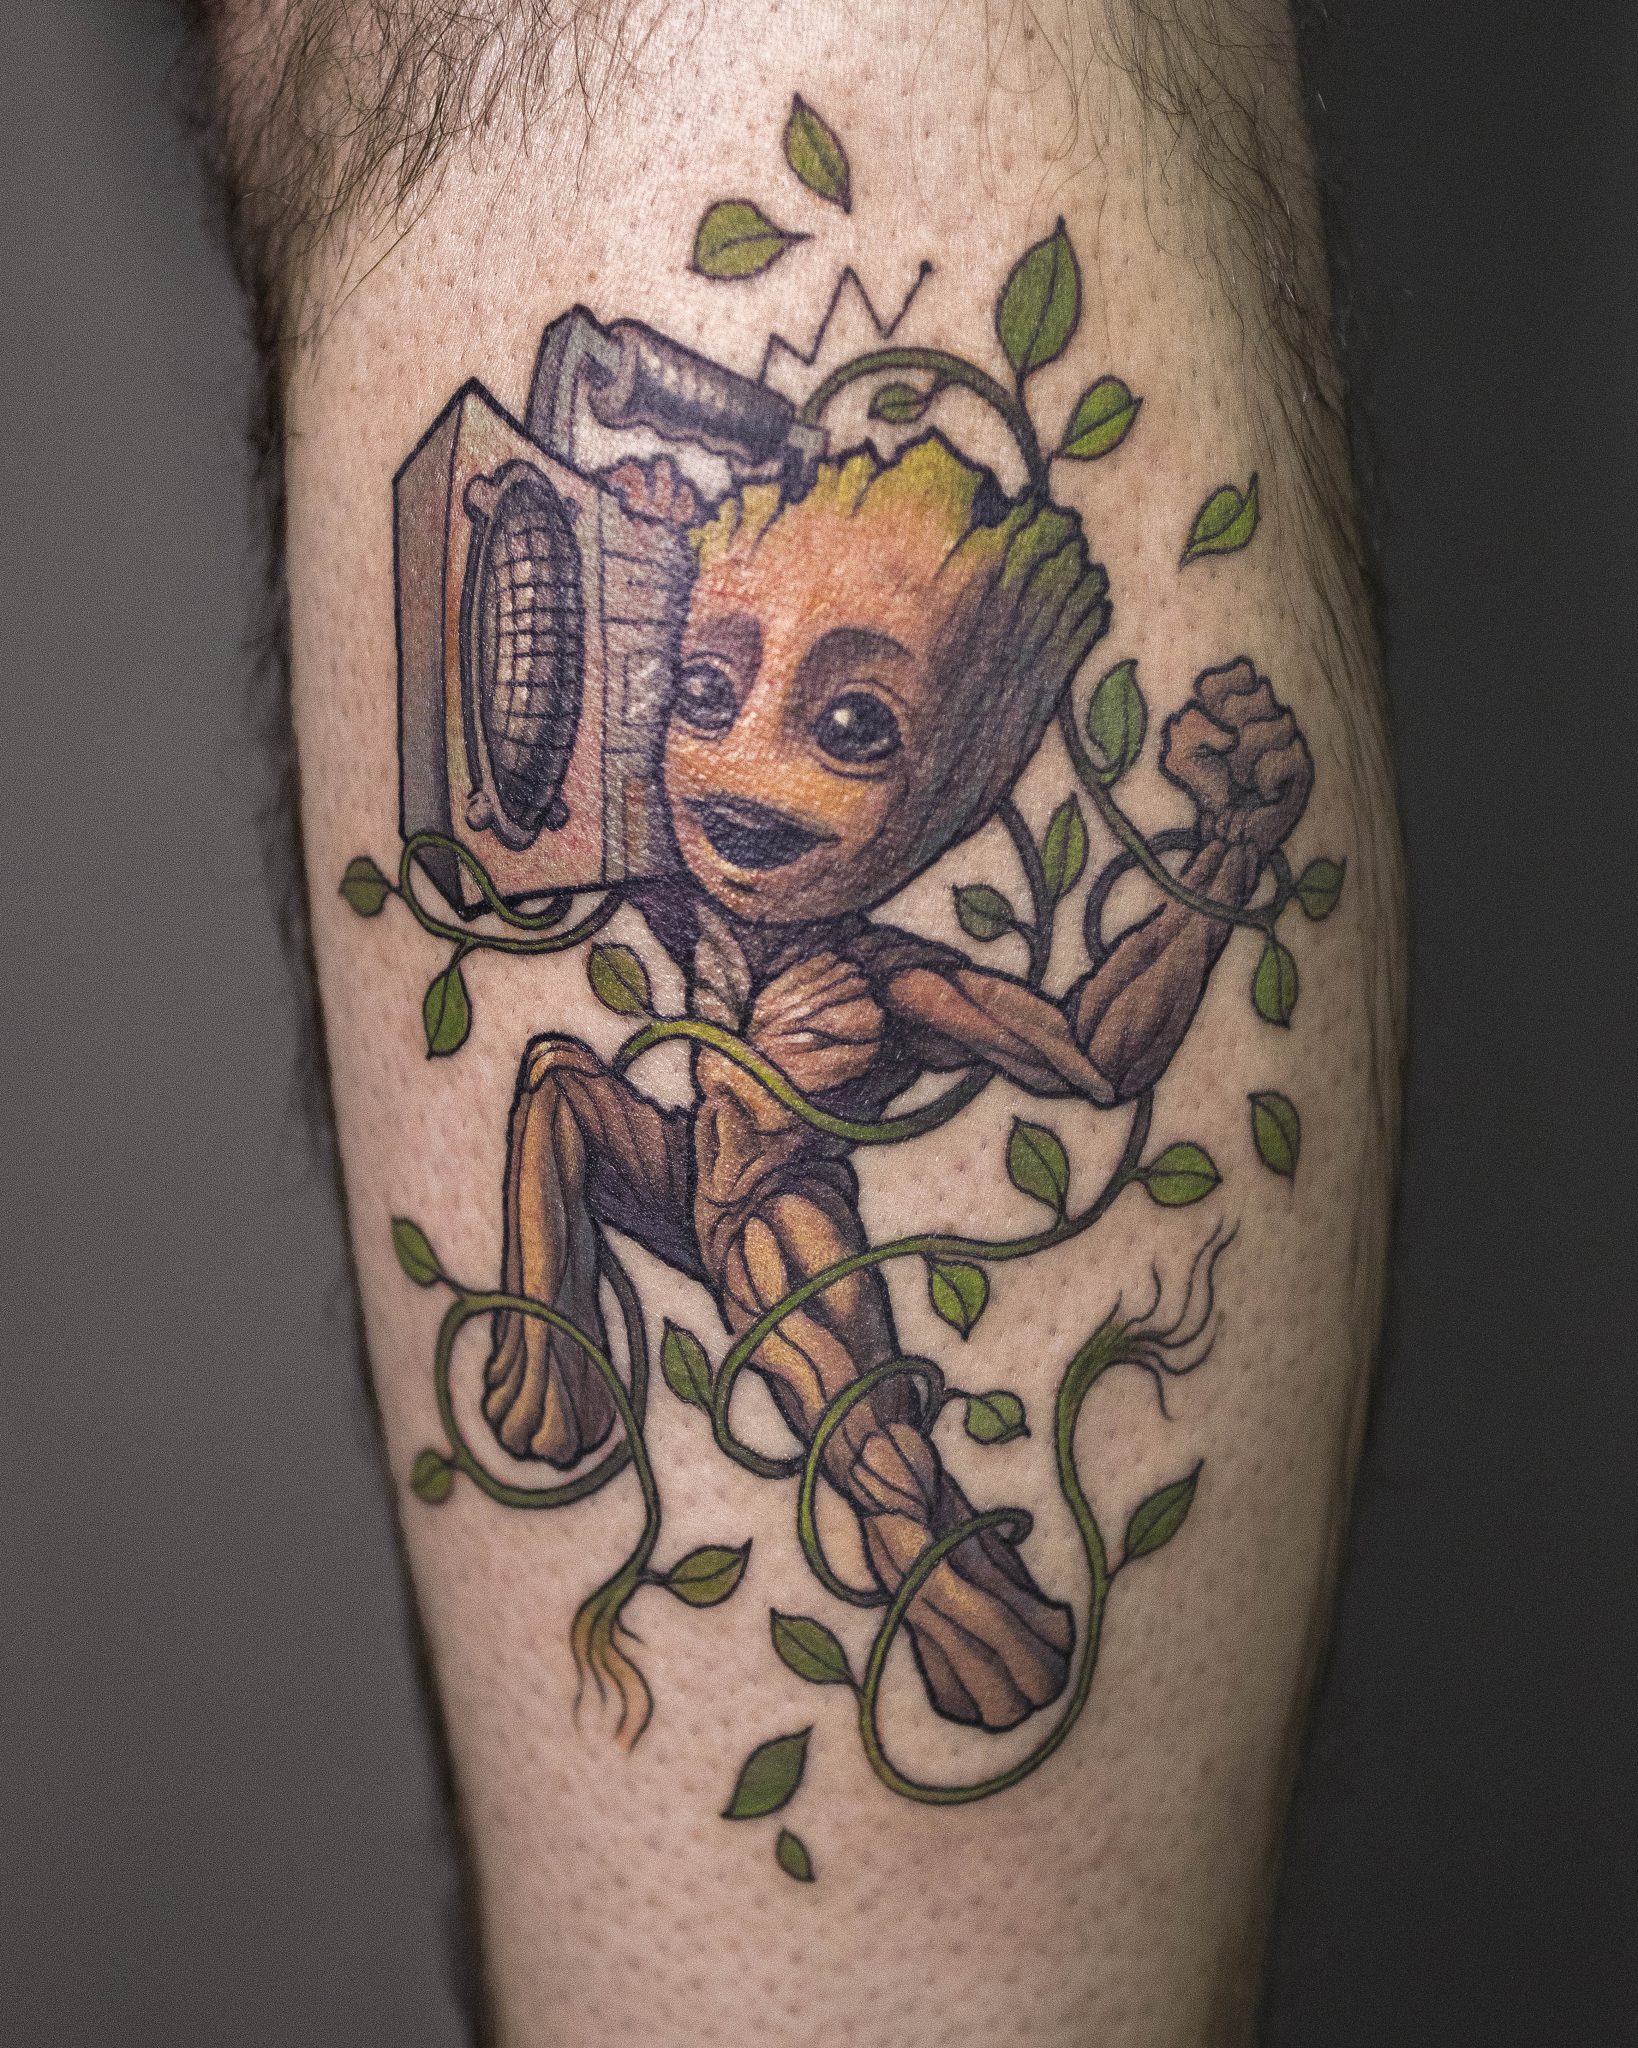 𝕋𝔸𝕋𝕋𝕆𝕆  𝕀𝔻𝔼𝔸𝕊 on Twitter I Am Groot Marvel  Tattoo  ideas ลงค link httpstco5ZvkxoWB5h tattoo tattooart  httpstco91ug5V6Fls  X